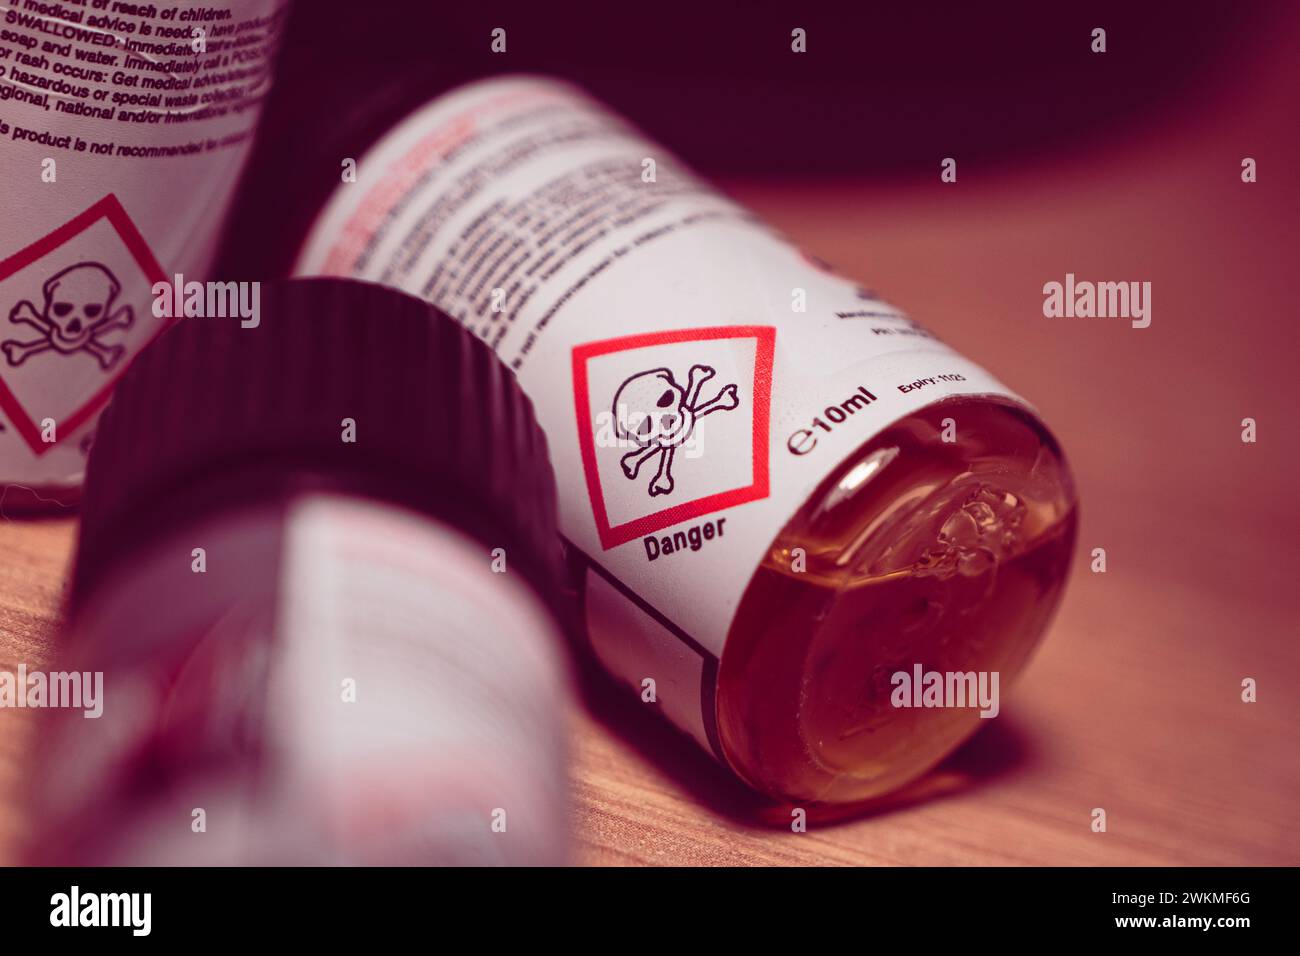 Dampfsaftflaschen aus Kunststoff mit Warnschild „Gefahr Schädel“ auf dem Etikett, Nahaufnahme. Stockfoto